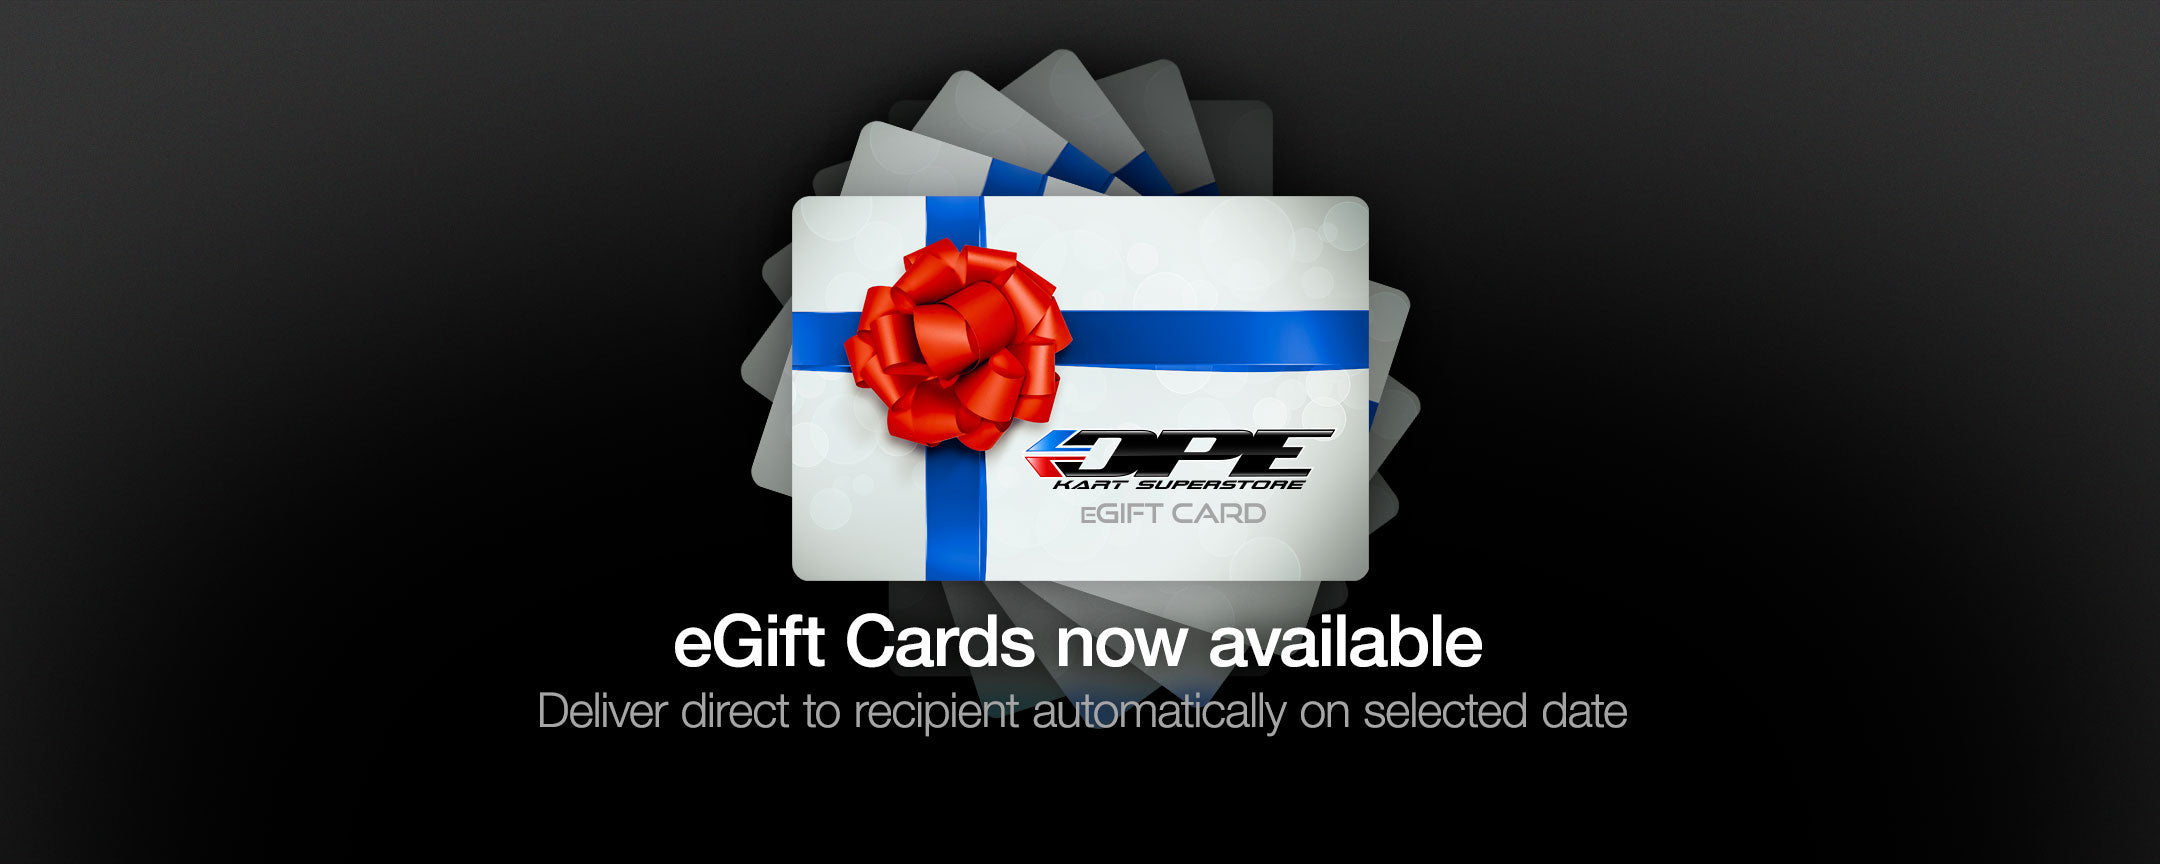 DPE Kart Superstore Gift Card. Go Kart gift card